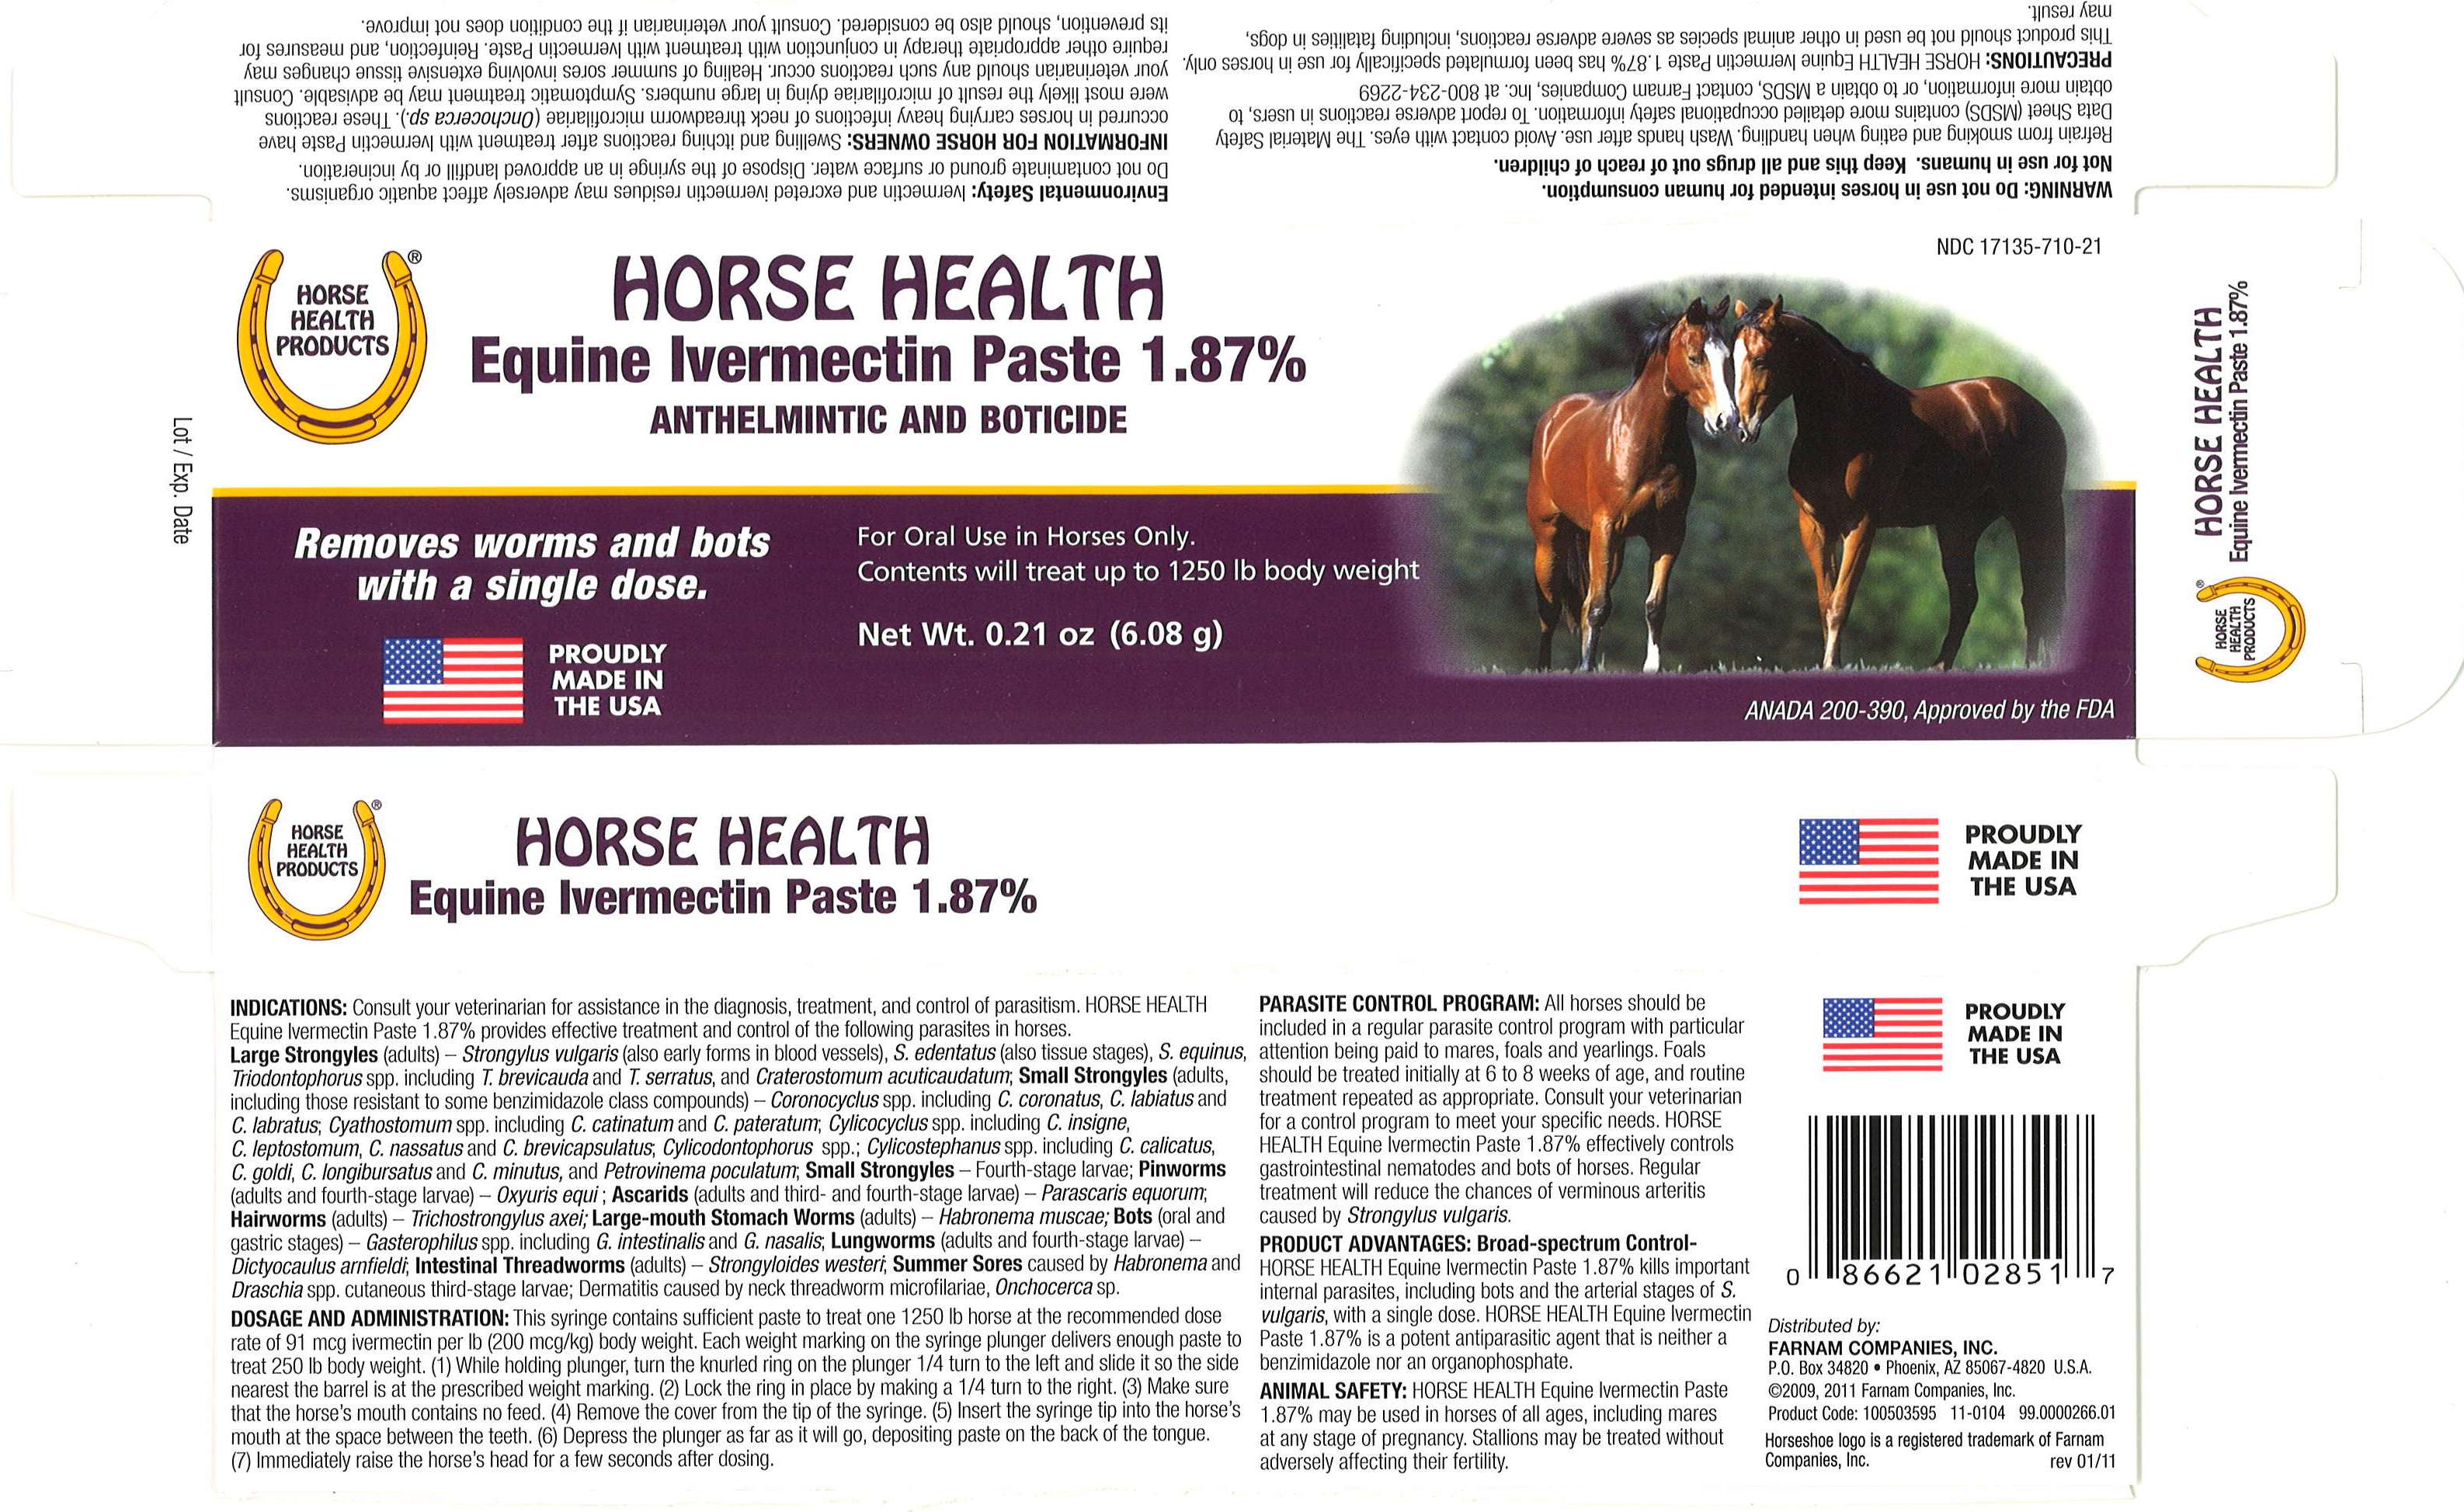 Horse Health Carton